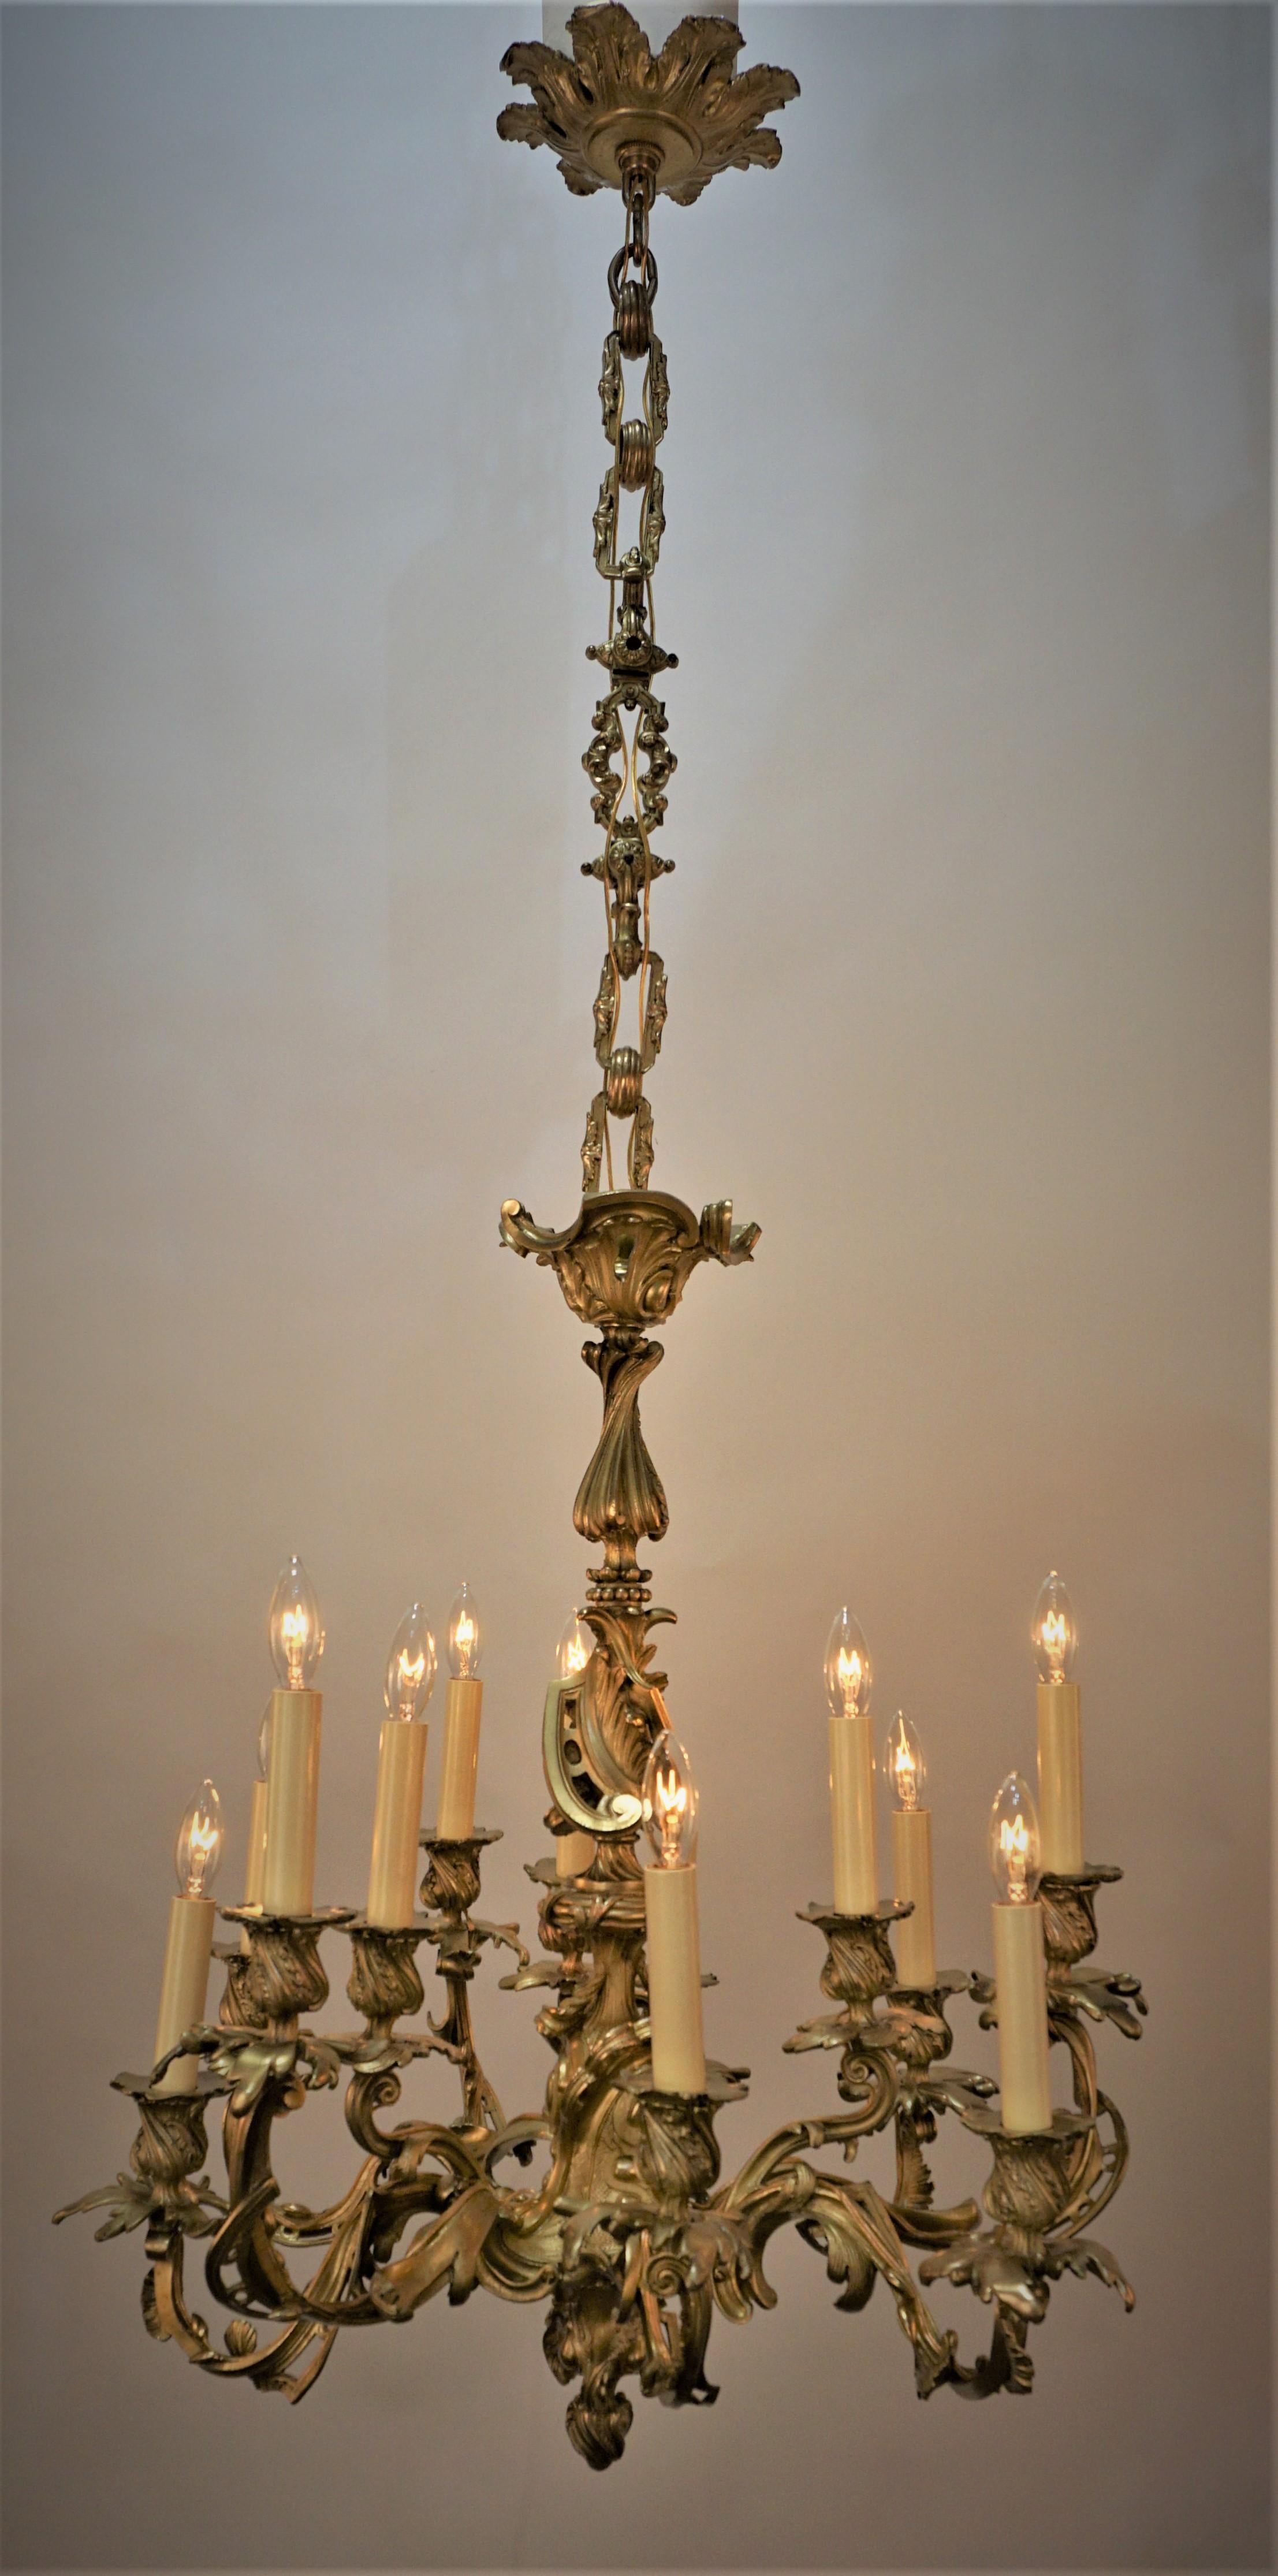 lustre en bronze du 19ème siècle à douze bougies qui a été électrifié par des professionnels et est prêt à être installé. 
Mesures : 25